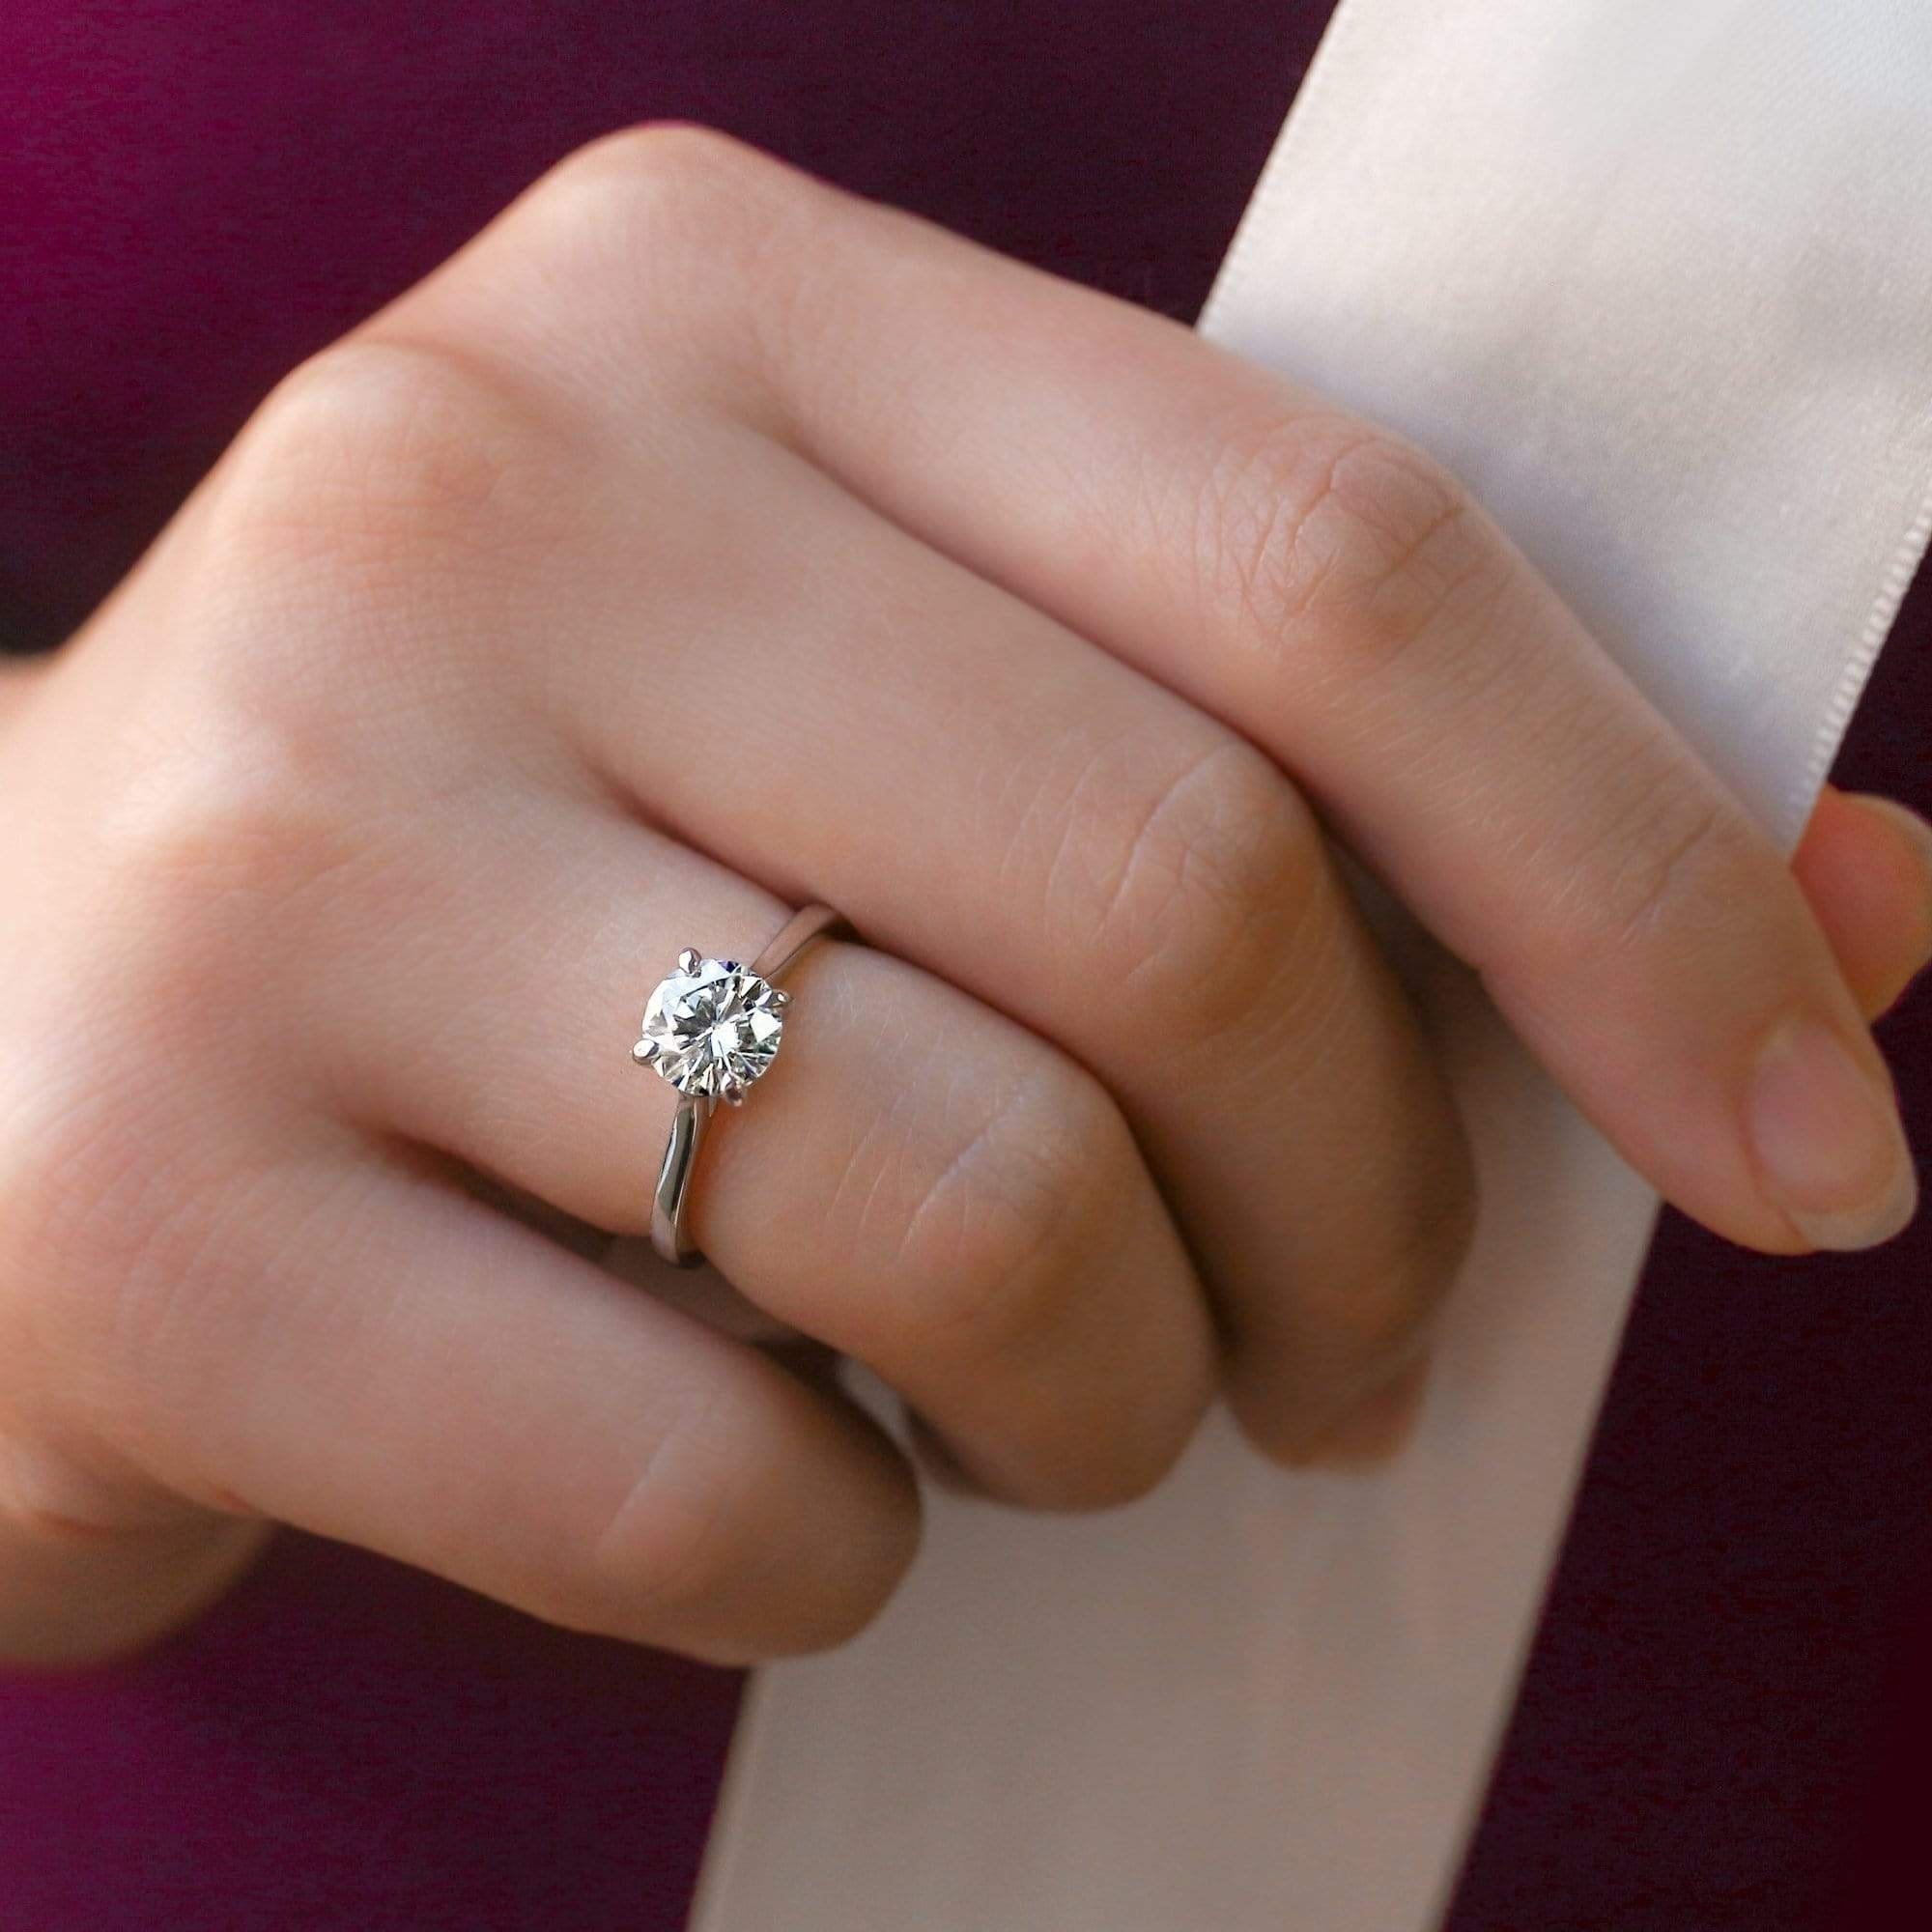 3 карата цена в рублях. 1.75 Carat Engagement Ring. Обручальное кольцо три карата.